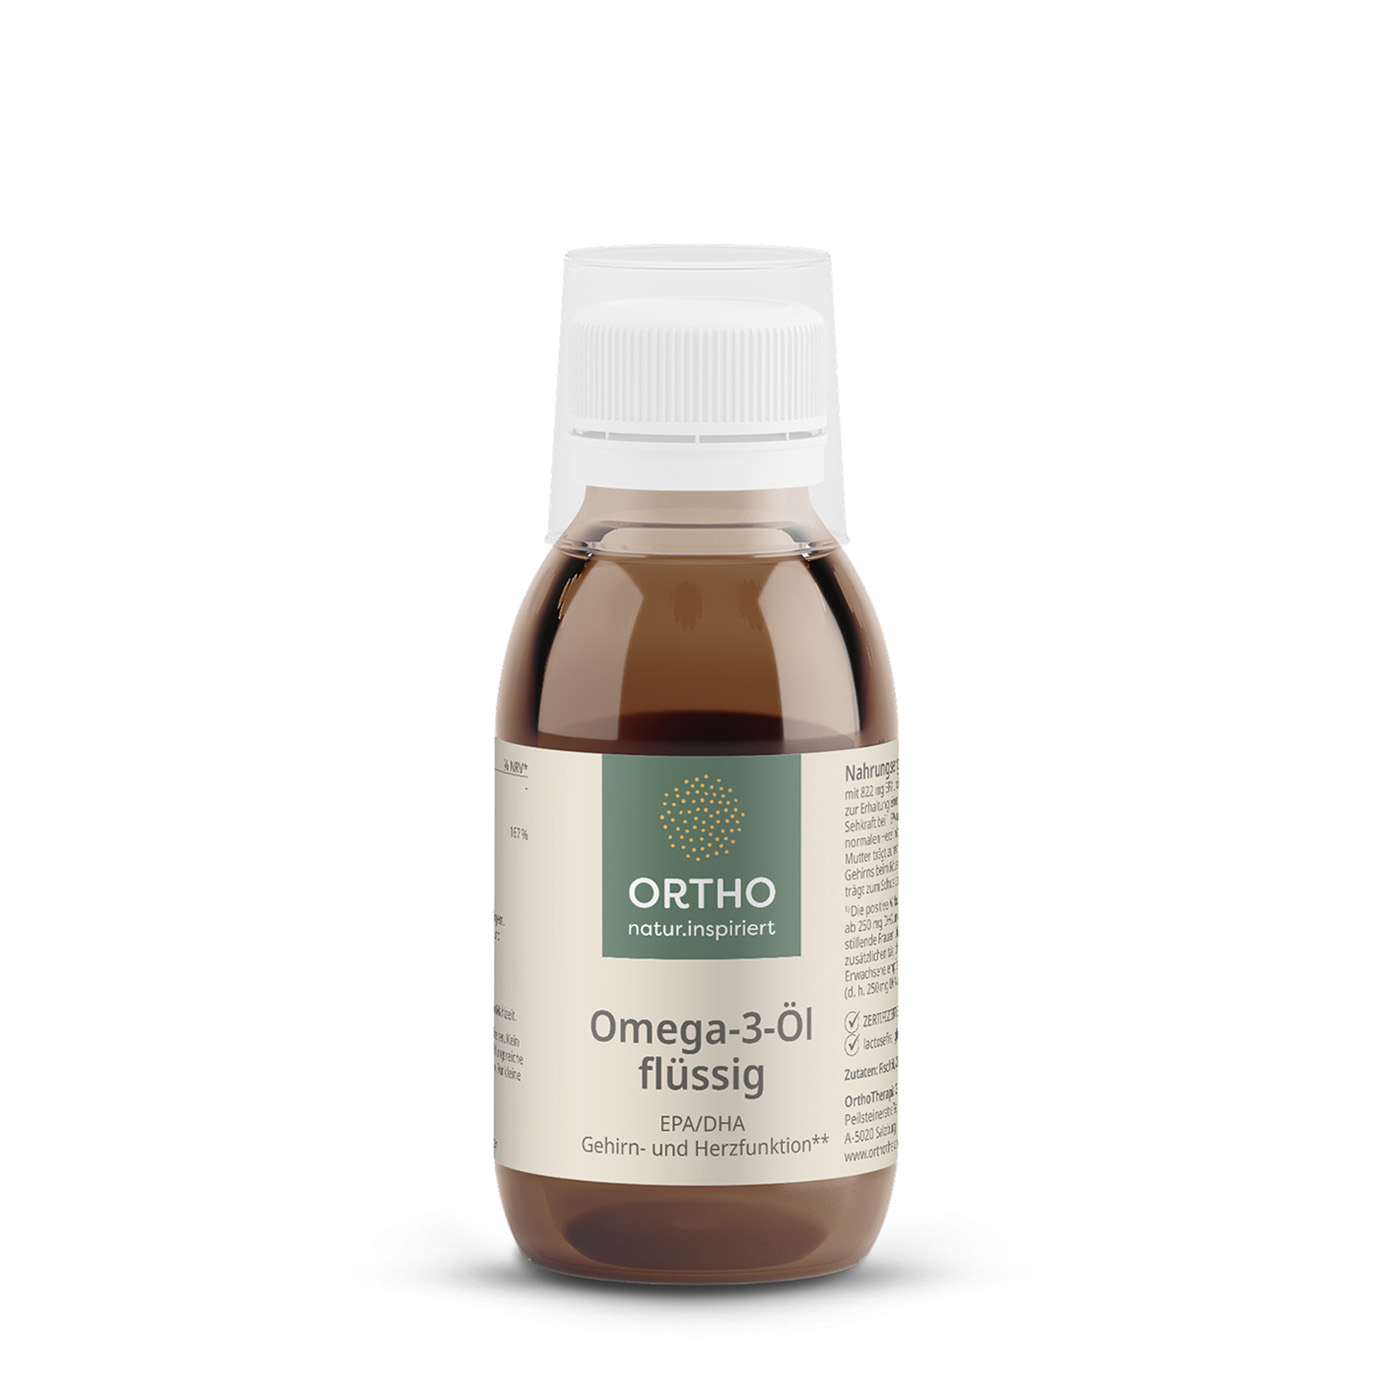 Omega-3-Öl flüssig - 100 ml 100 ml Omega-3 Öl flüssig